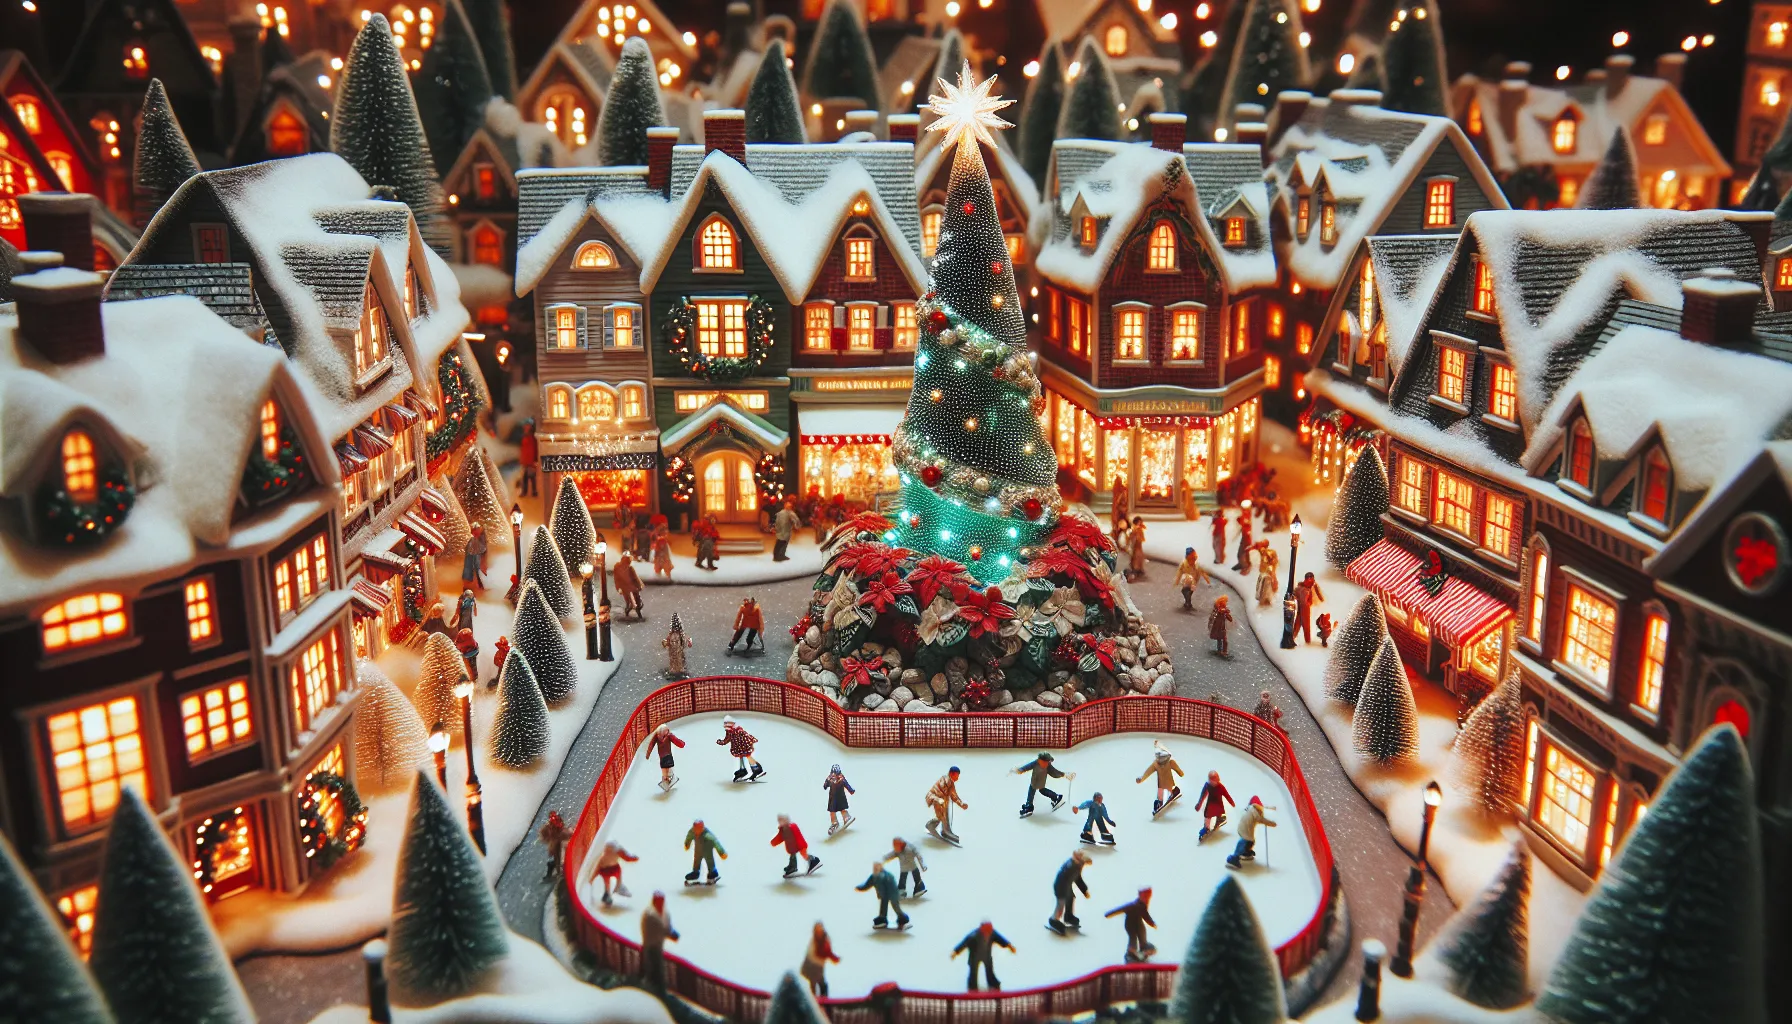 Descubre Christmas Village, el belén americano perfecto para decorar tu hogar esta Navidad.